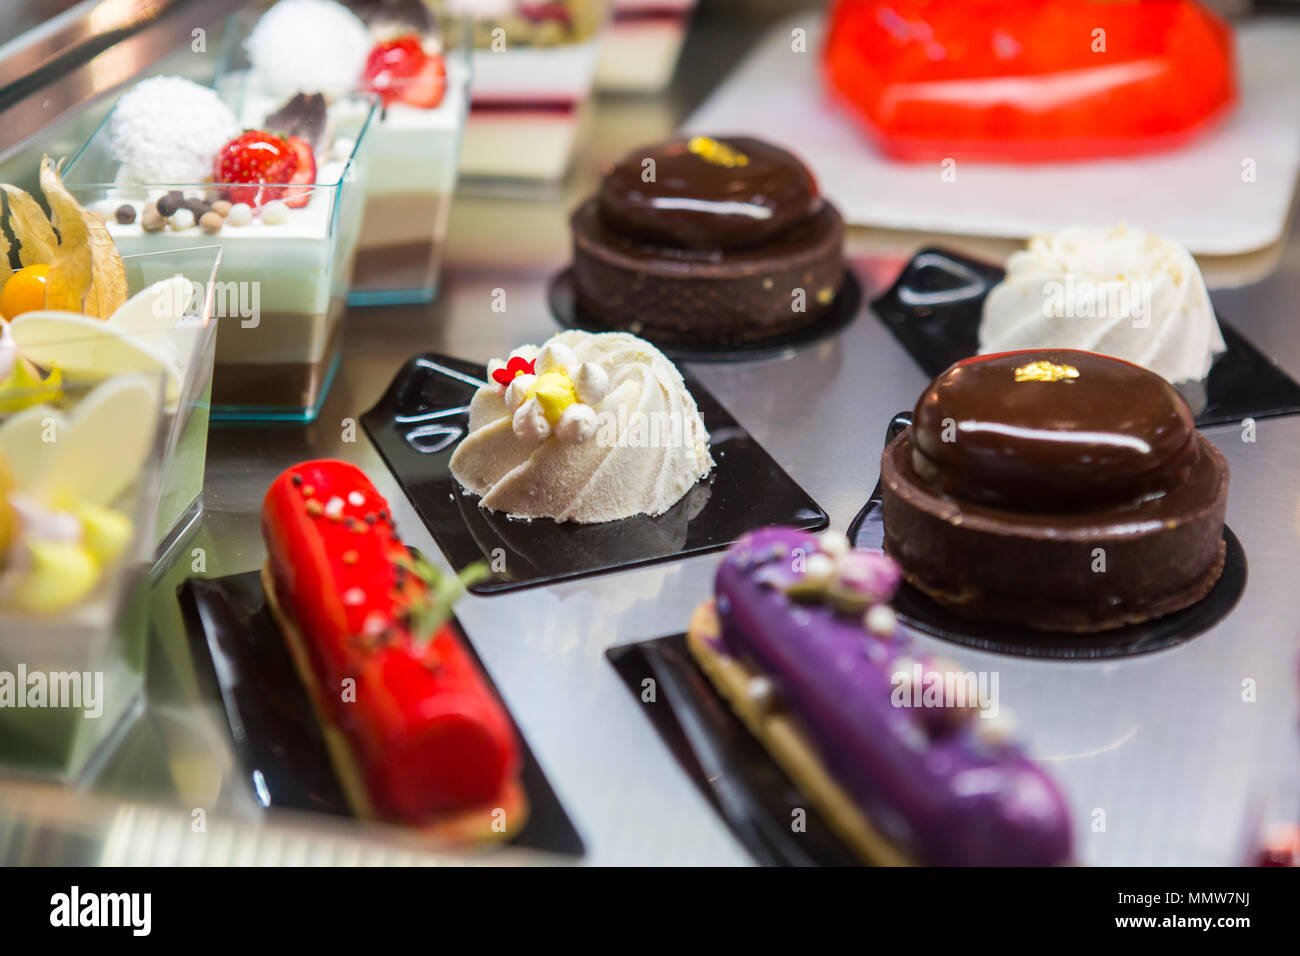 Eine Auswahl an köstlichen süßen Desserts wird in einer Ausstellung gezeigt. Stockfoto